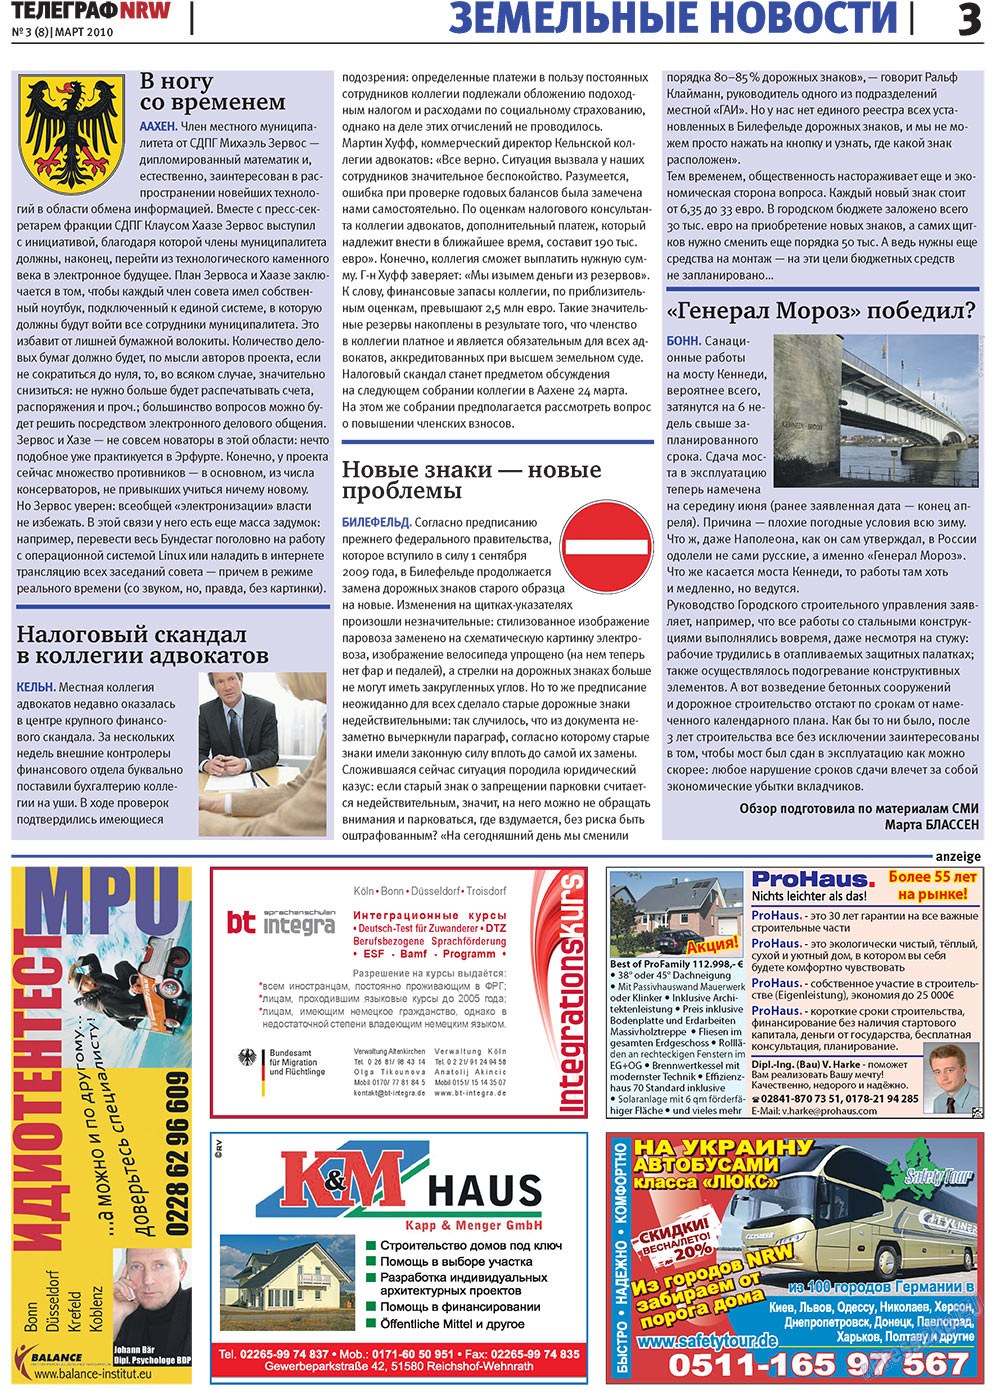 Телеграф NRW (газета). 2010 год, номер 3, стр. 3